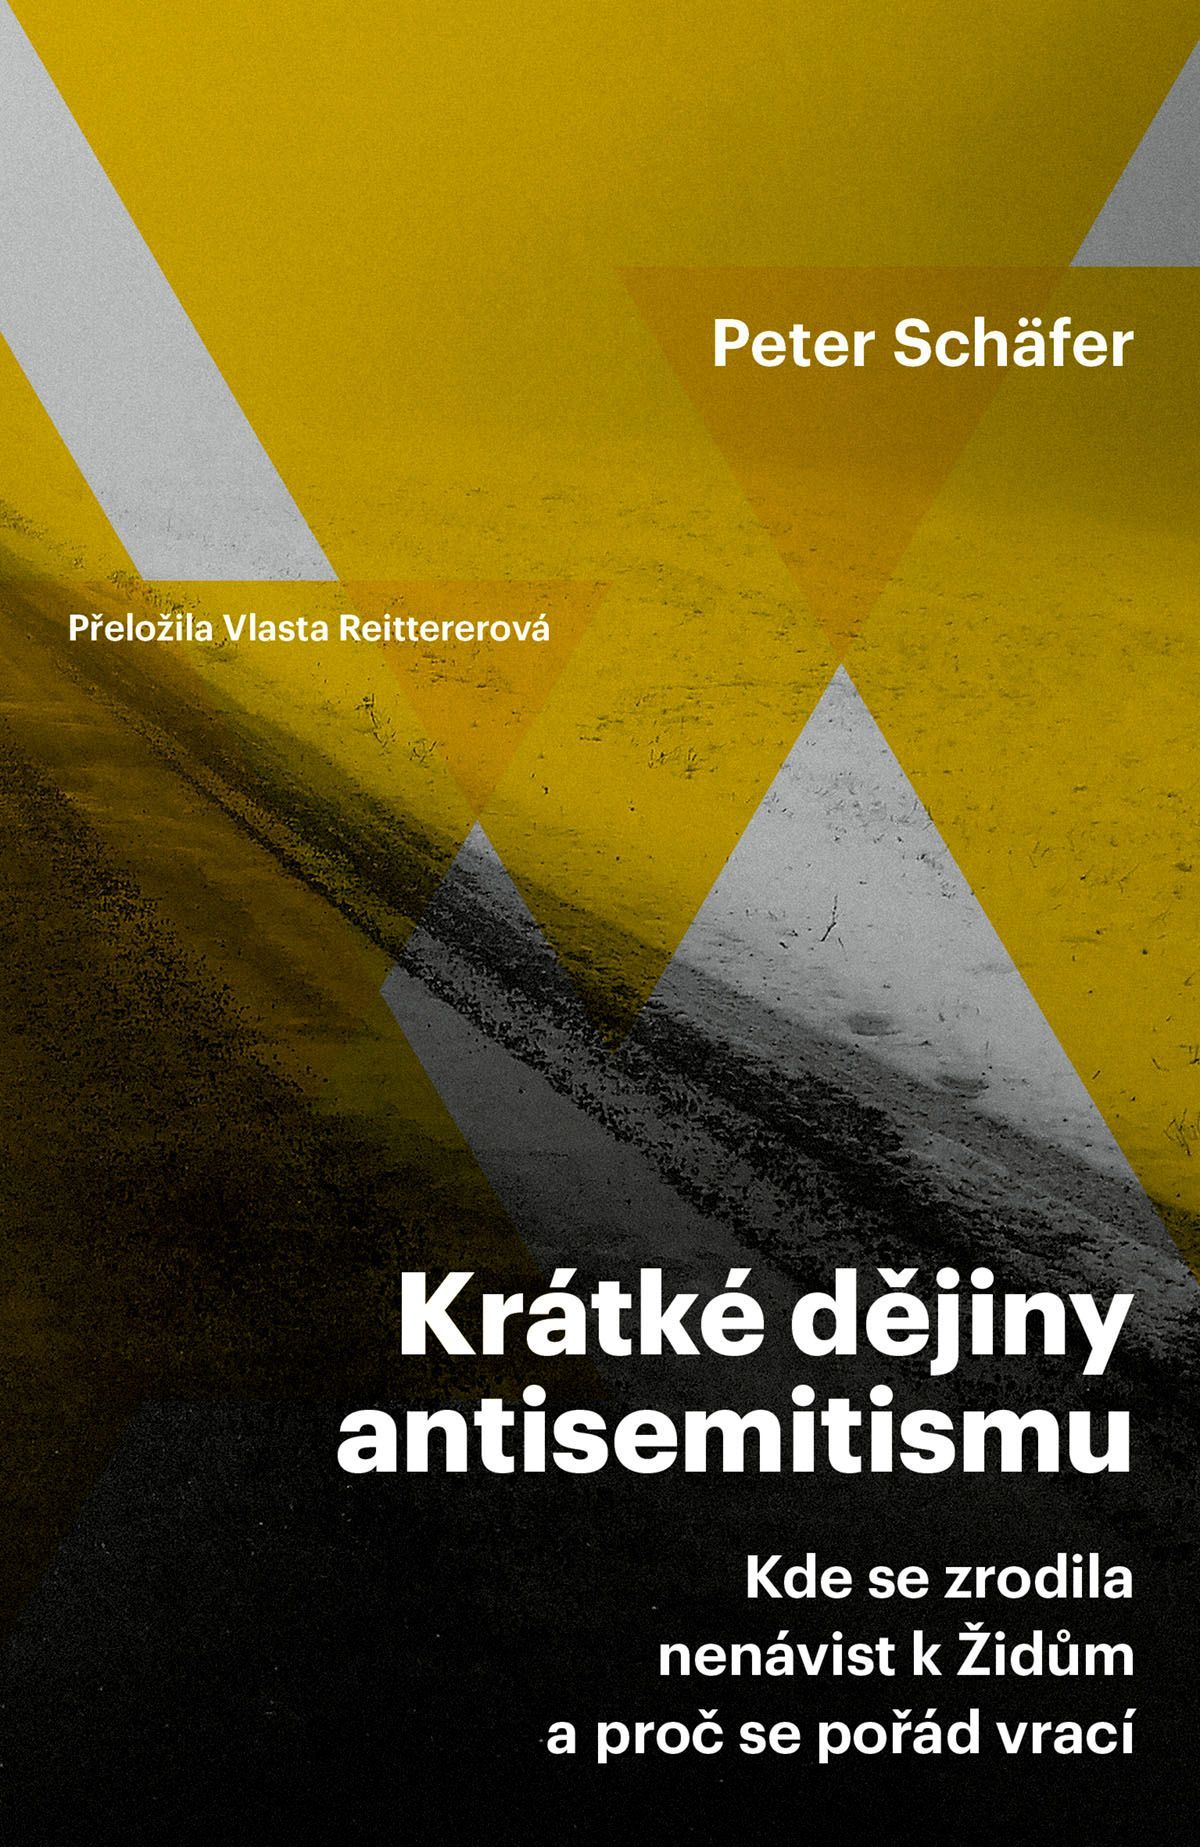 Peter Schäfer: Krátké dějiny antisemitismu